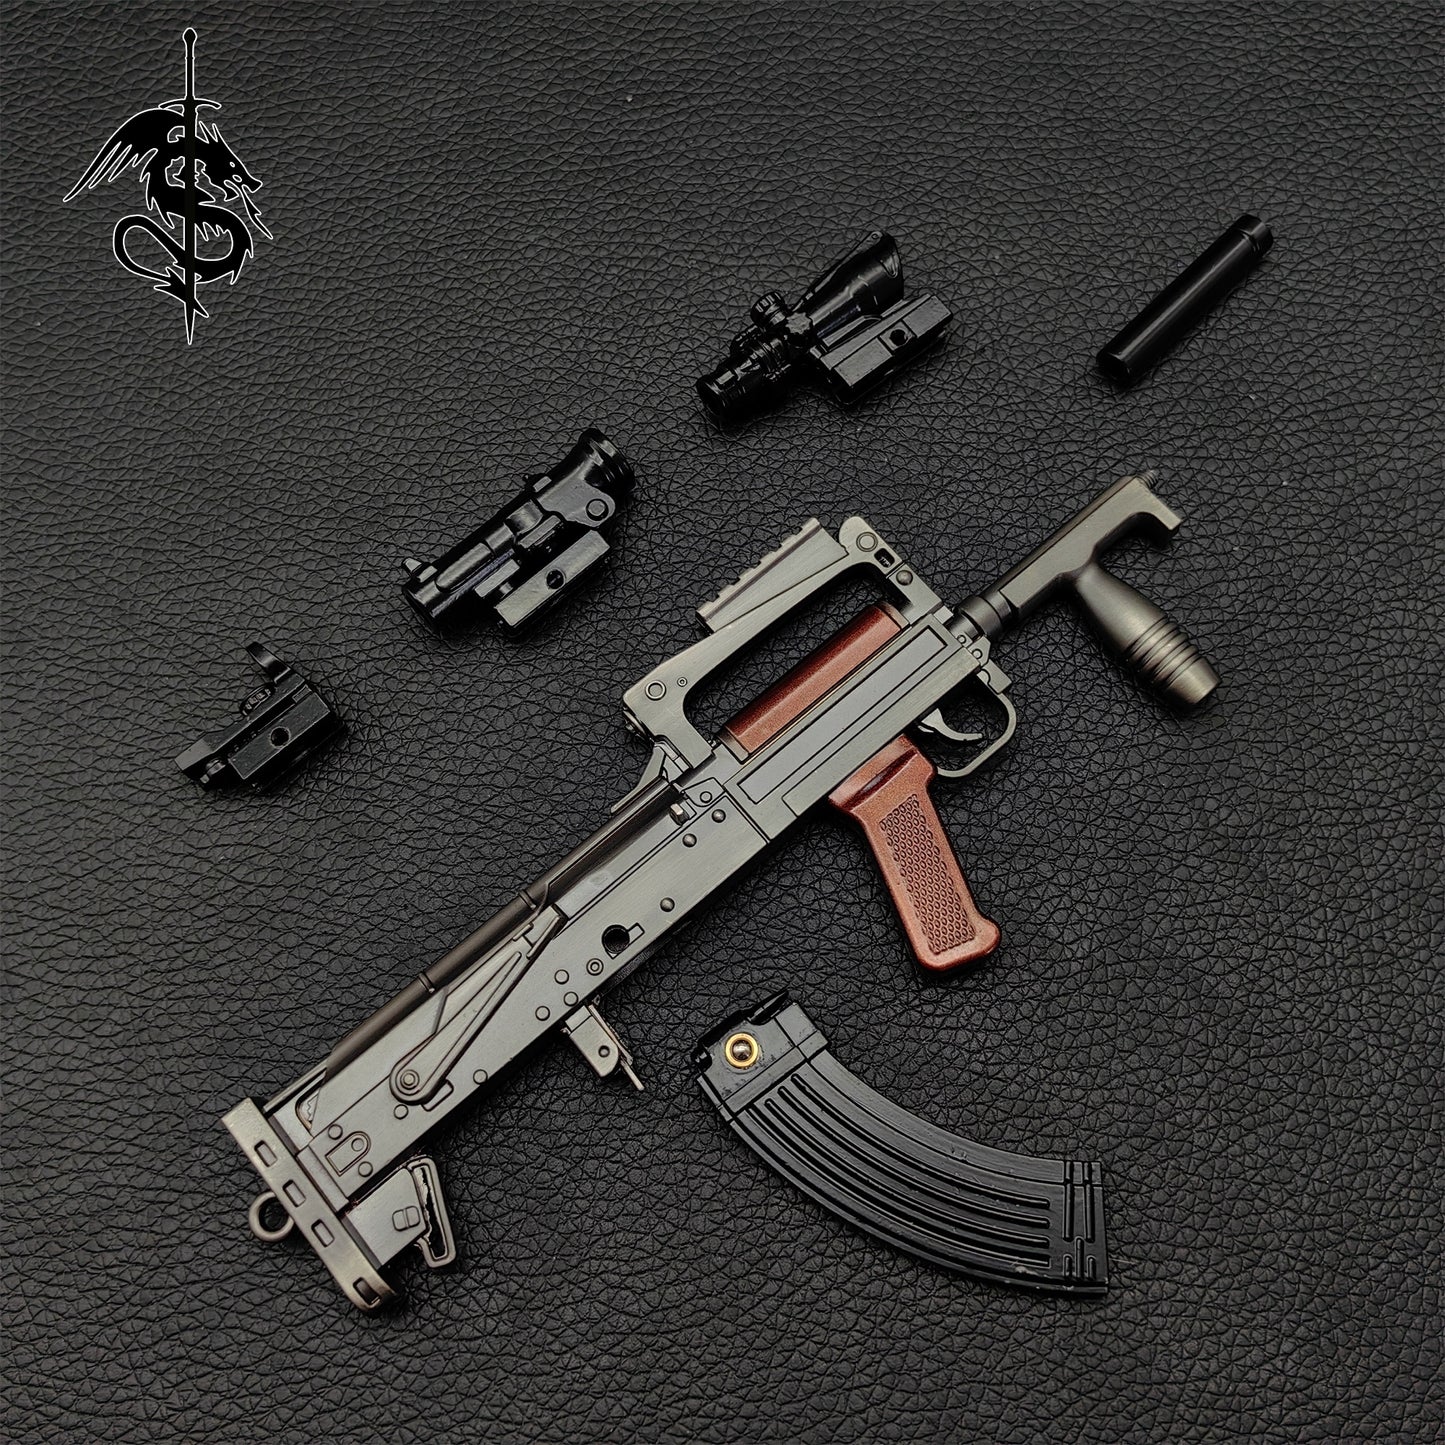 OTs-14 Groza Miniature Metal Groza Gun Model